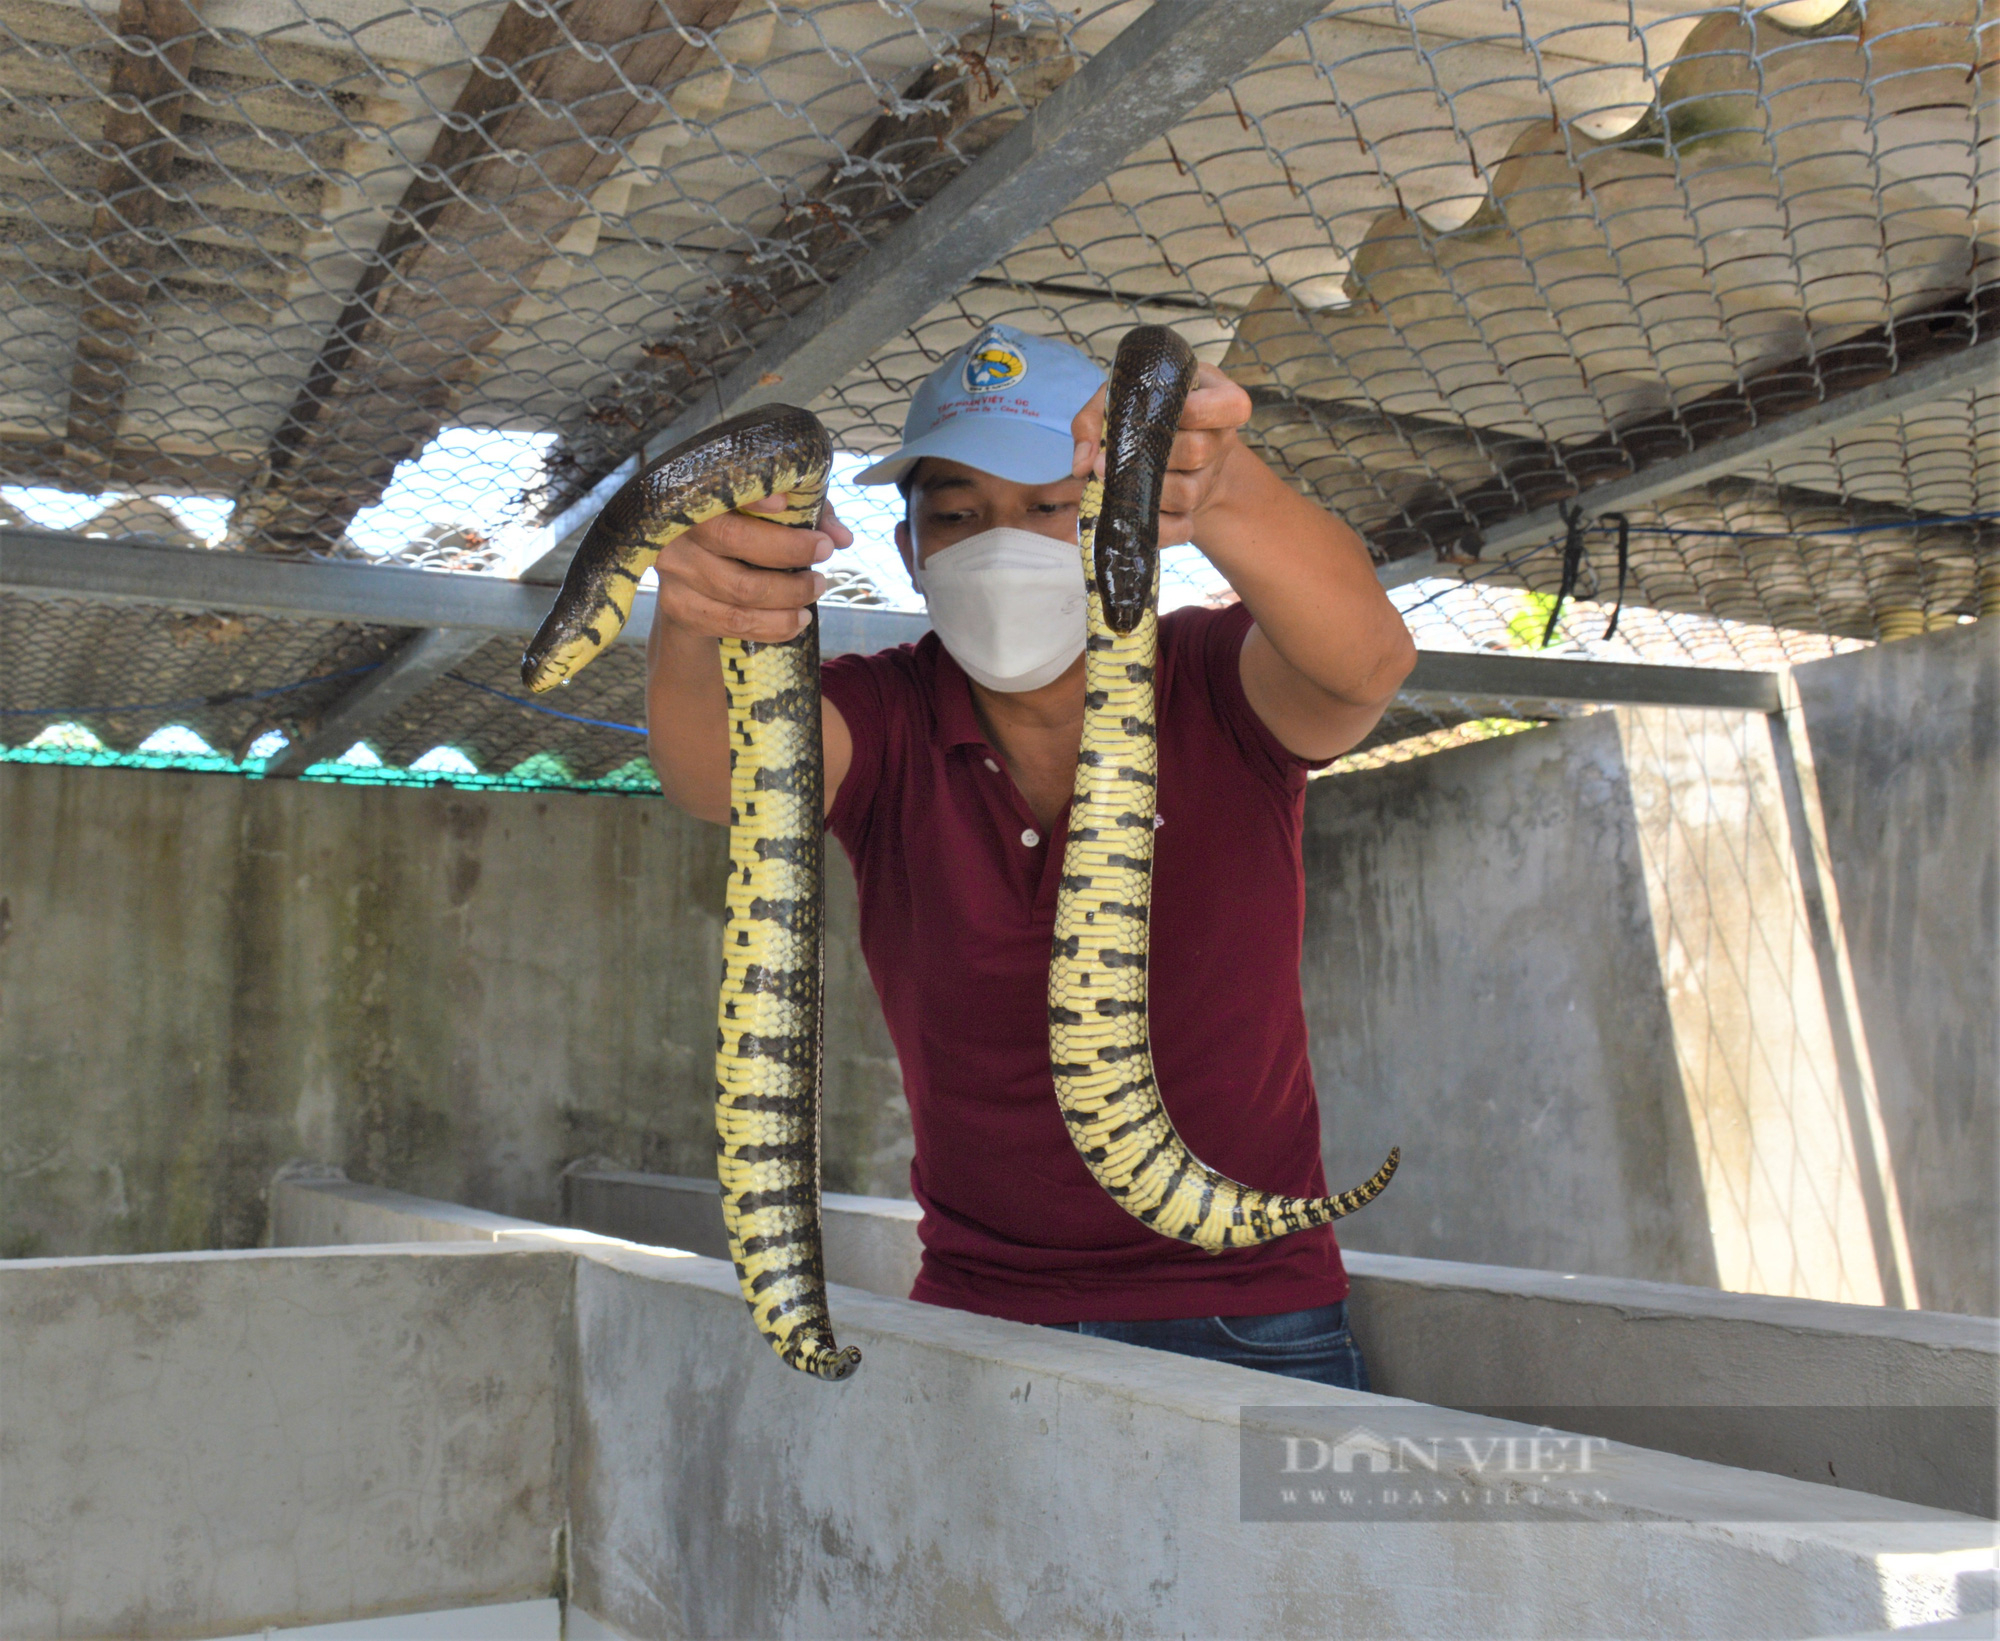 Nuôi loài rắn mập ú không có độc, trai làng bán mỗi kg nửa triệu đồng - Ảnh 5.